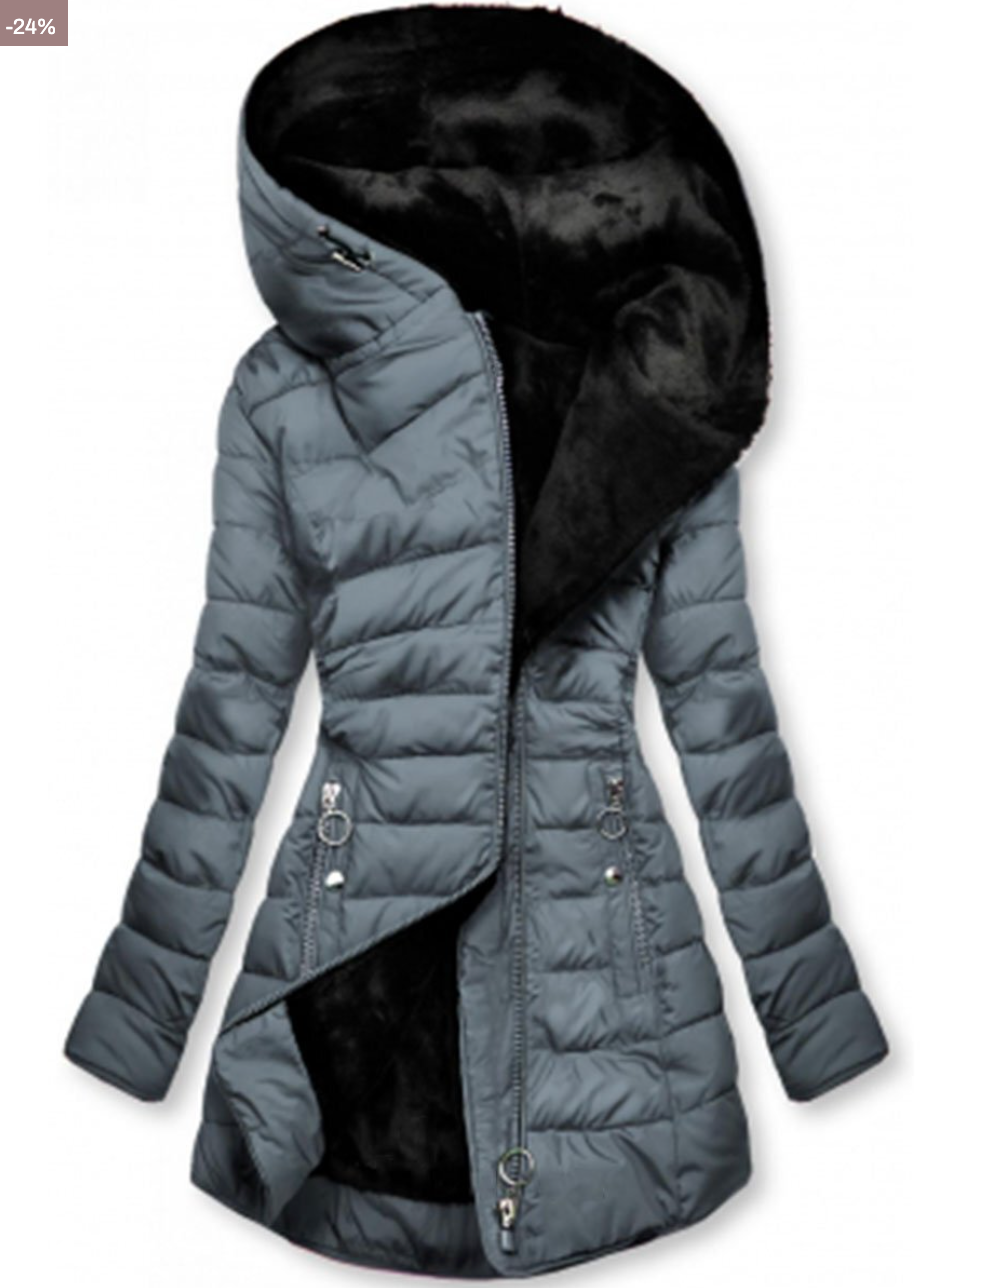 IONA - Padded jacket with warm plush lining